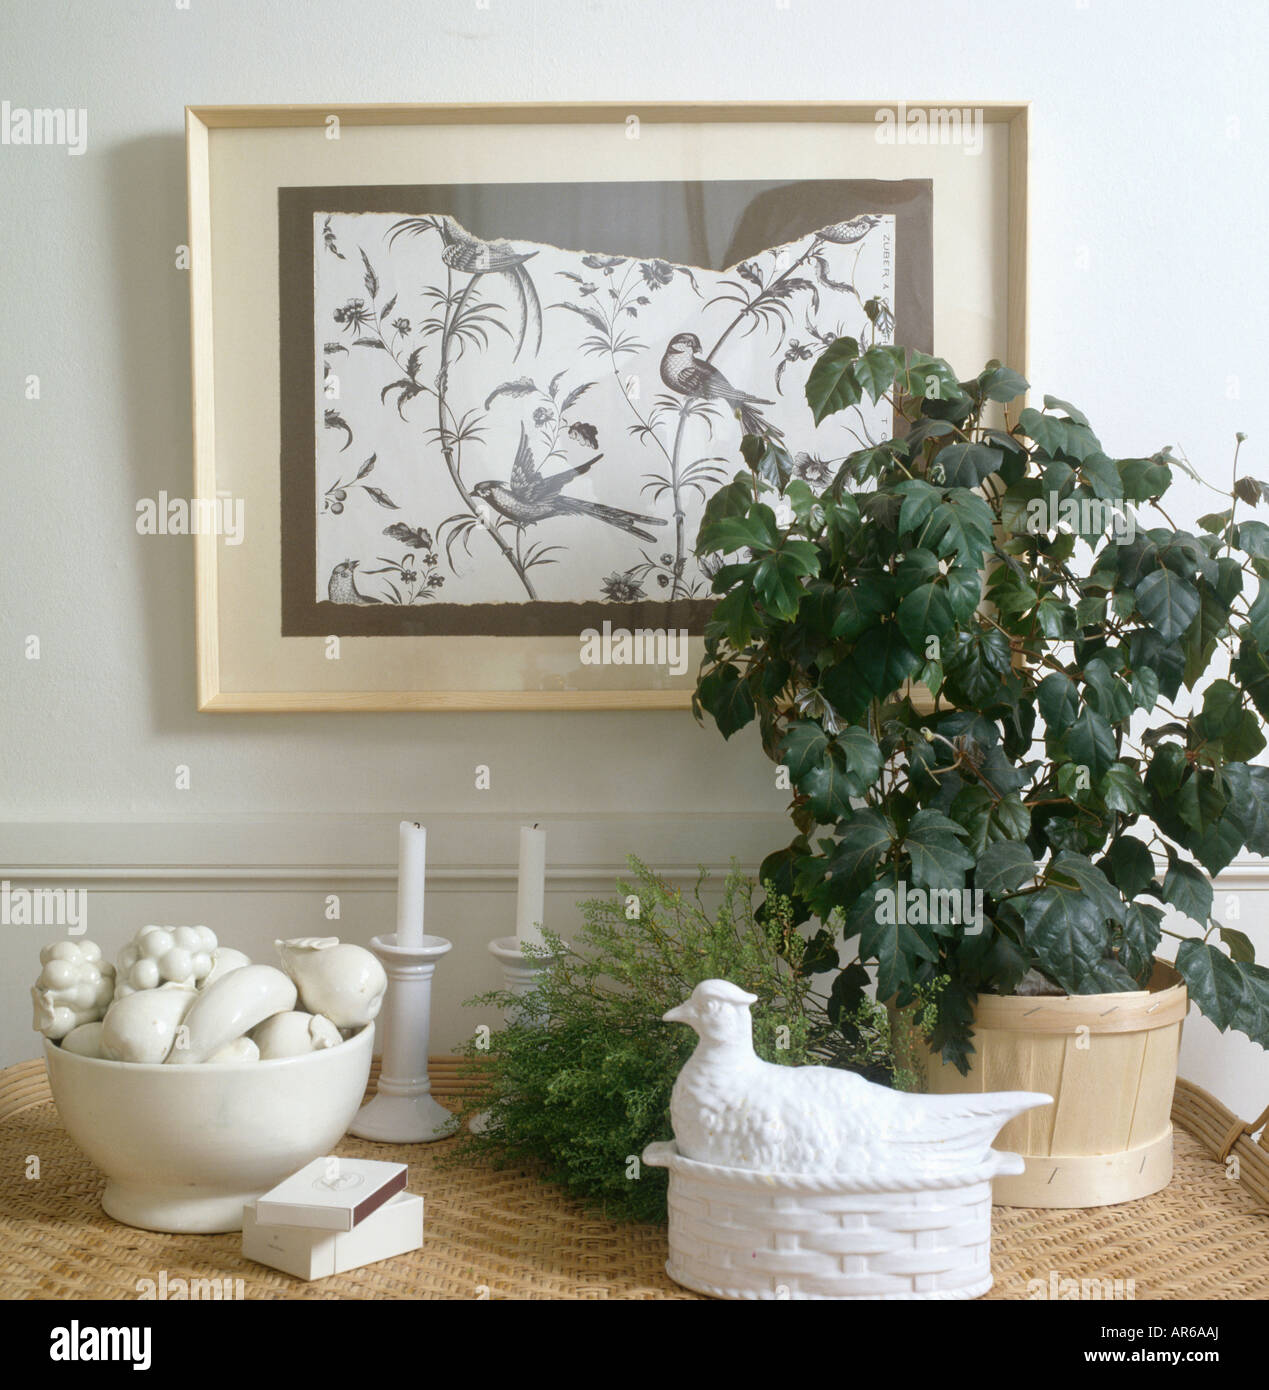 Immagine in bianco e nero sopra la tabella con l'uva ivy houseplant e collezione di porcellana bianca ornamenti Foto Stock